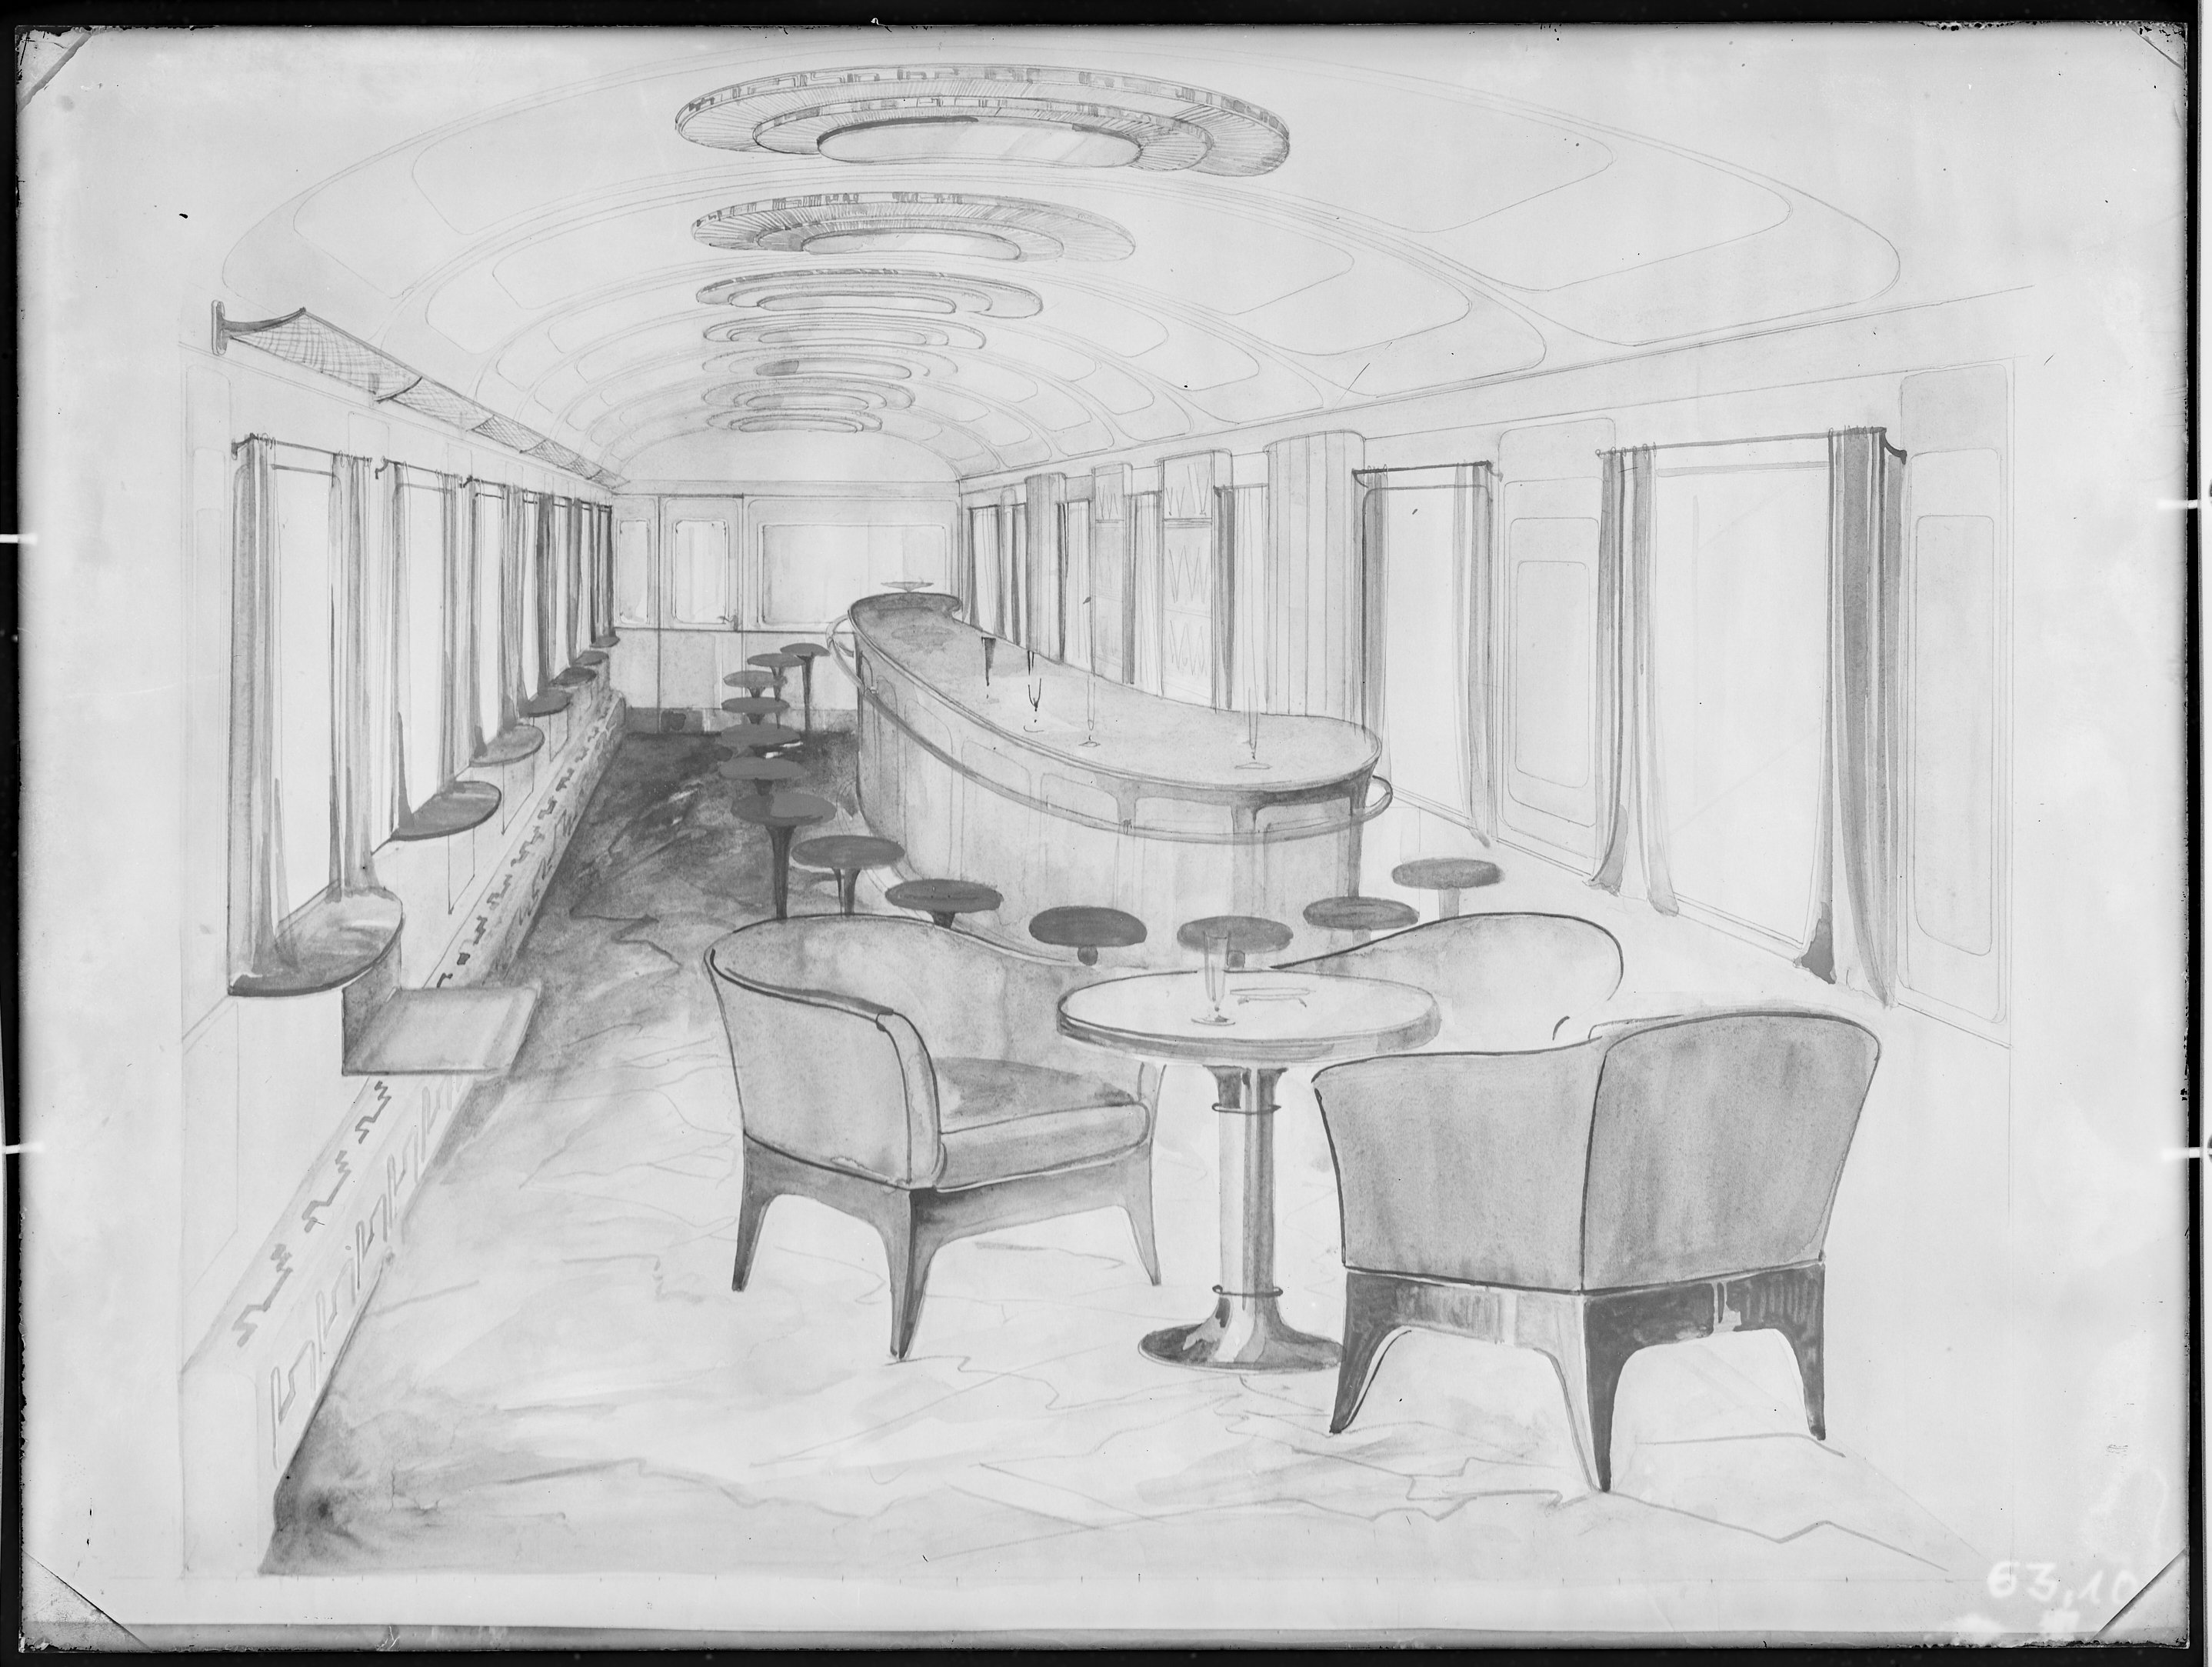 Fotografie: Entwurfszeichnung vermutlich für Speisewagen (Innenansicht), Bar-Abteil, um 1928? (Verkehrsmuseum Dresden CC BY-NC-SA)